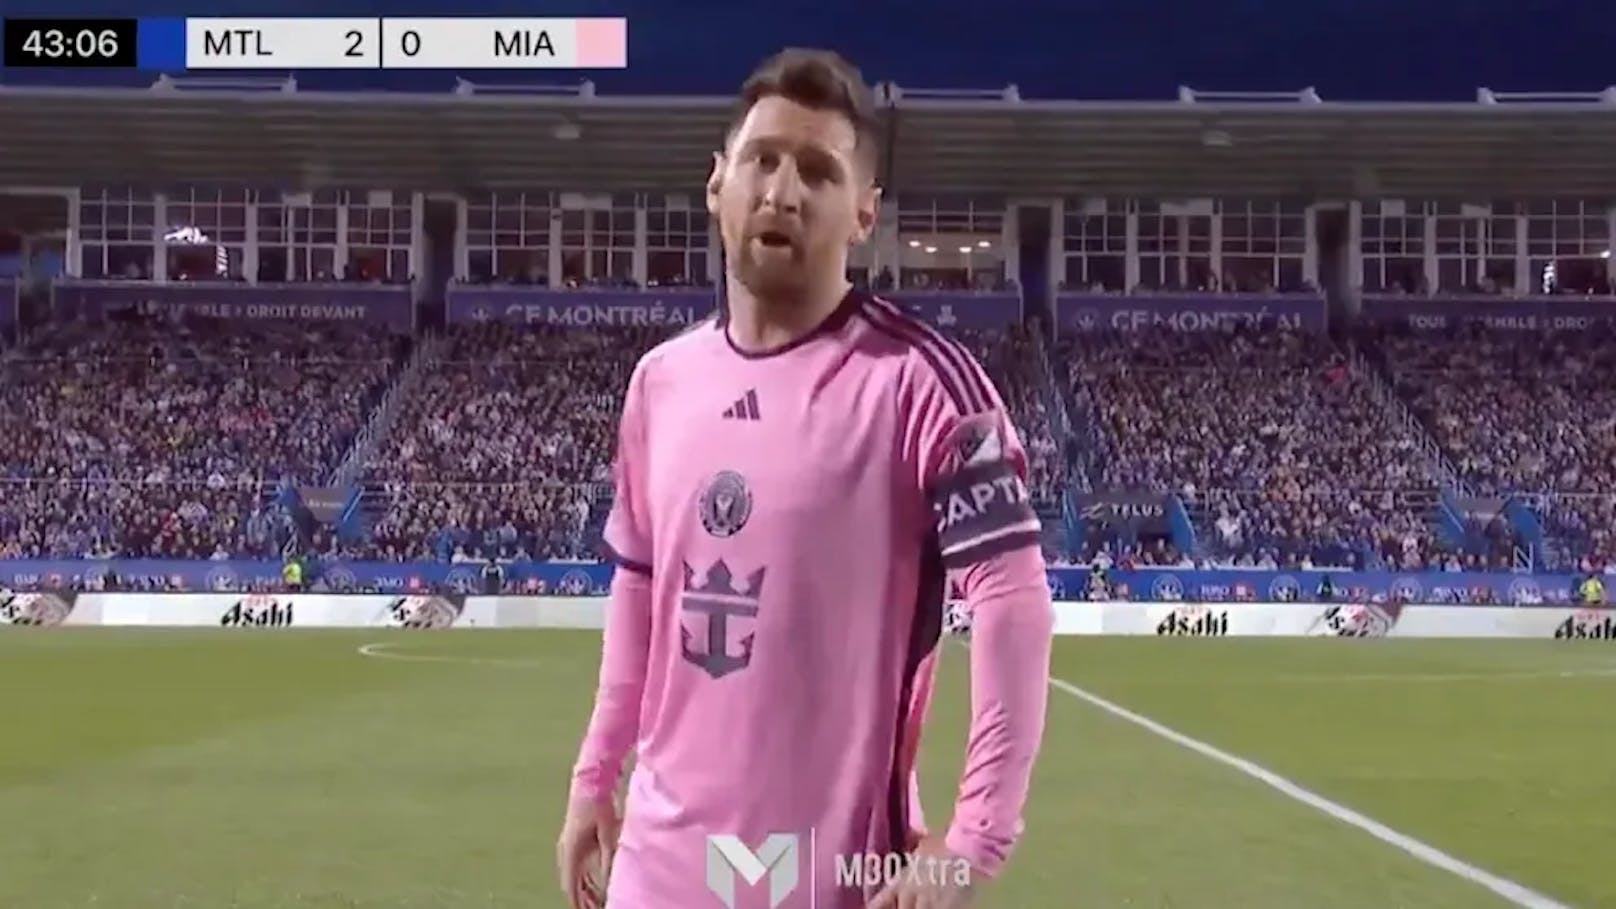 Messi ist stinksauer, schimpft live in TV-Kamera